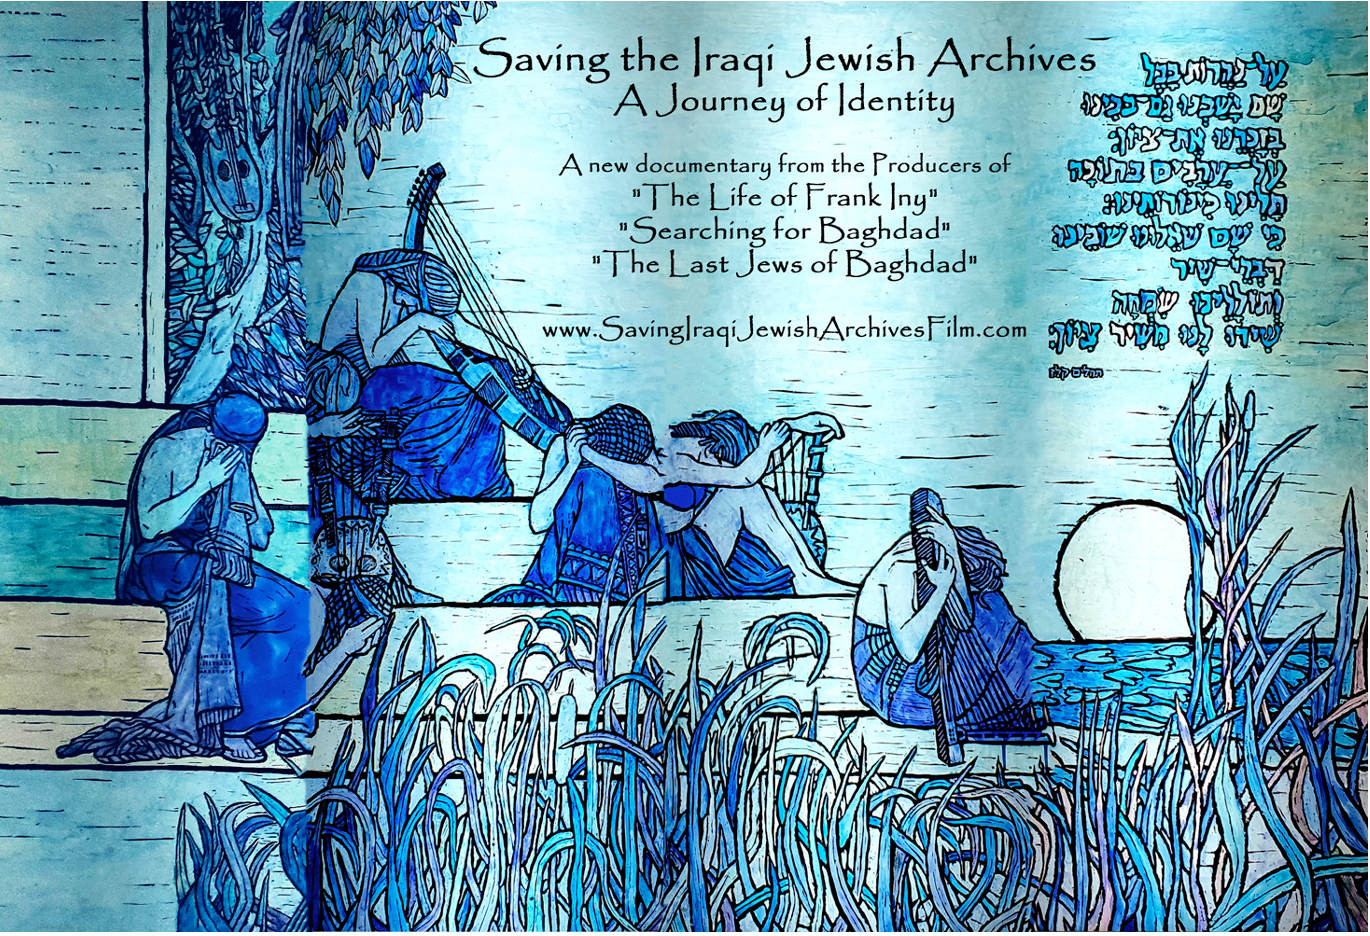 Iraqi Jewish Archives Film Premiere